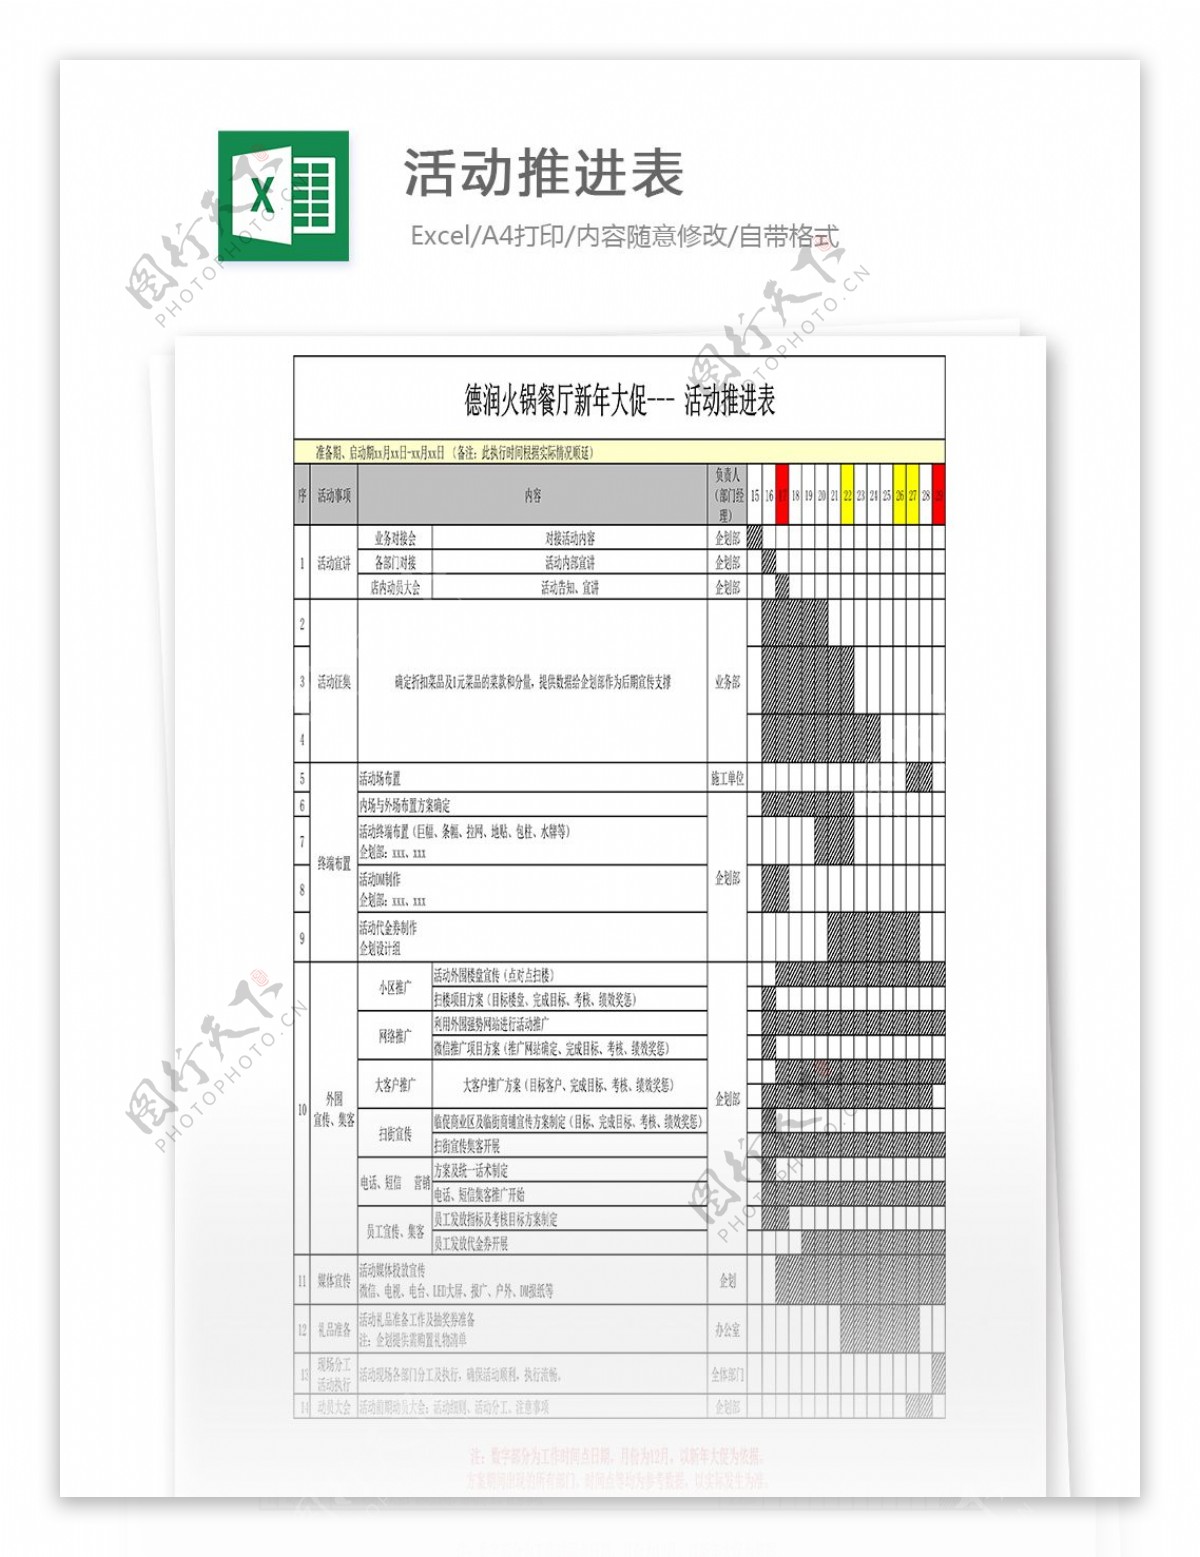 餐厅新年大促活动推进表Excel表格模板